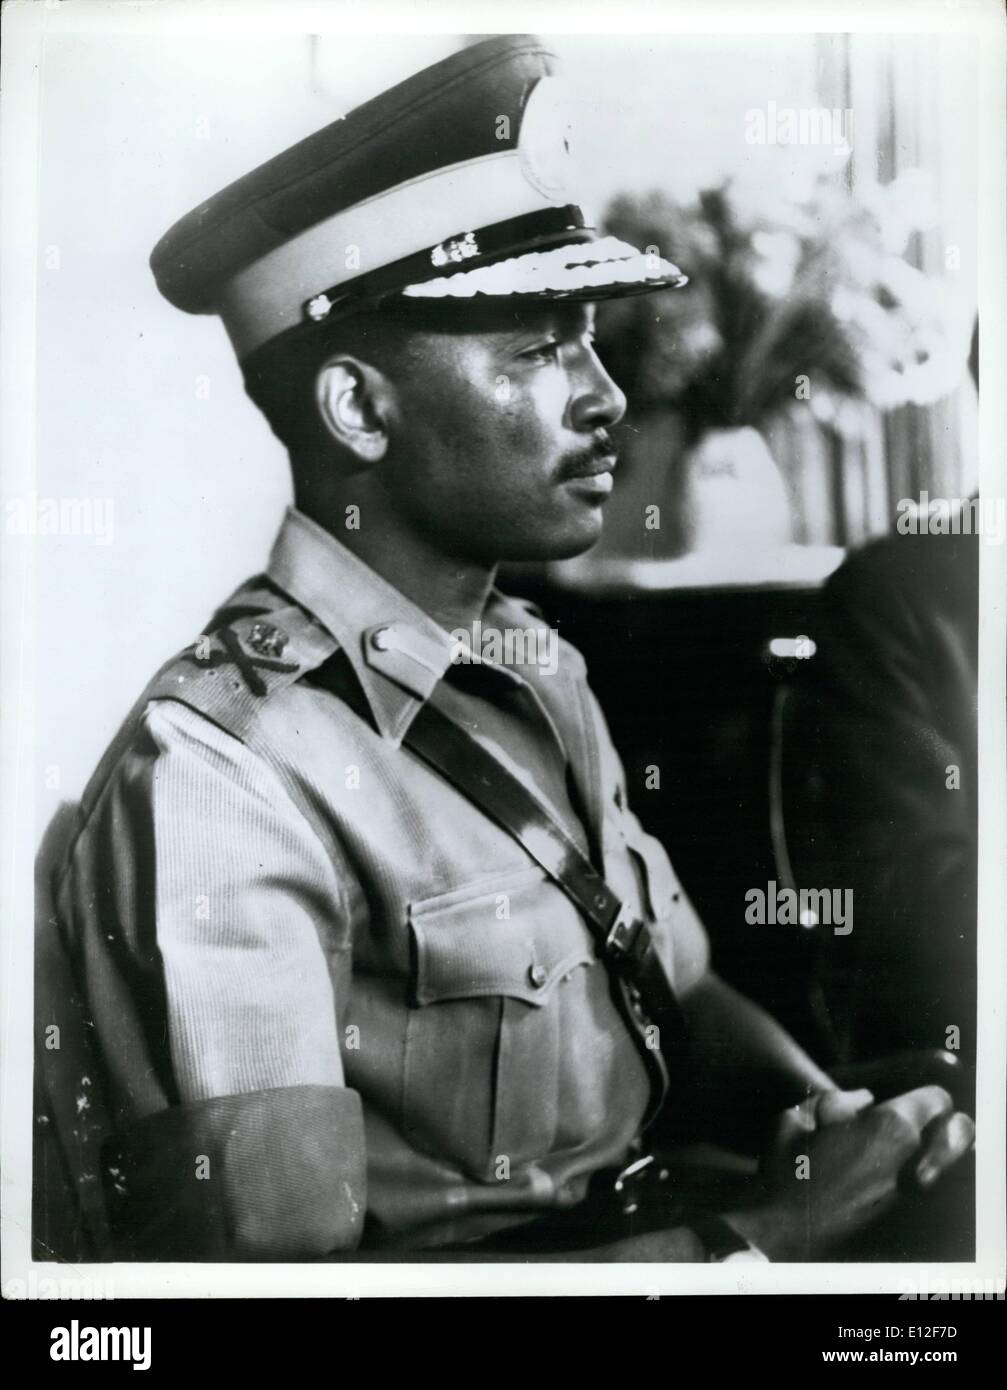 21 décembre 2011 - Le Ministère fédéral nigérian de la Défense a annoncé le 1er juin 1967, la promotion du lieutenant-colonel Yakubu Gowon au rang de le major général. Il est commandant en chef de l'armée nigériane fédéral. Le général de robe est montré ici dans son nouvel uniforme. Banque D'Images